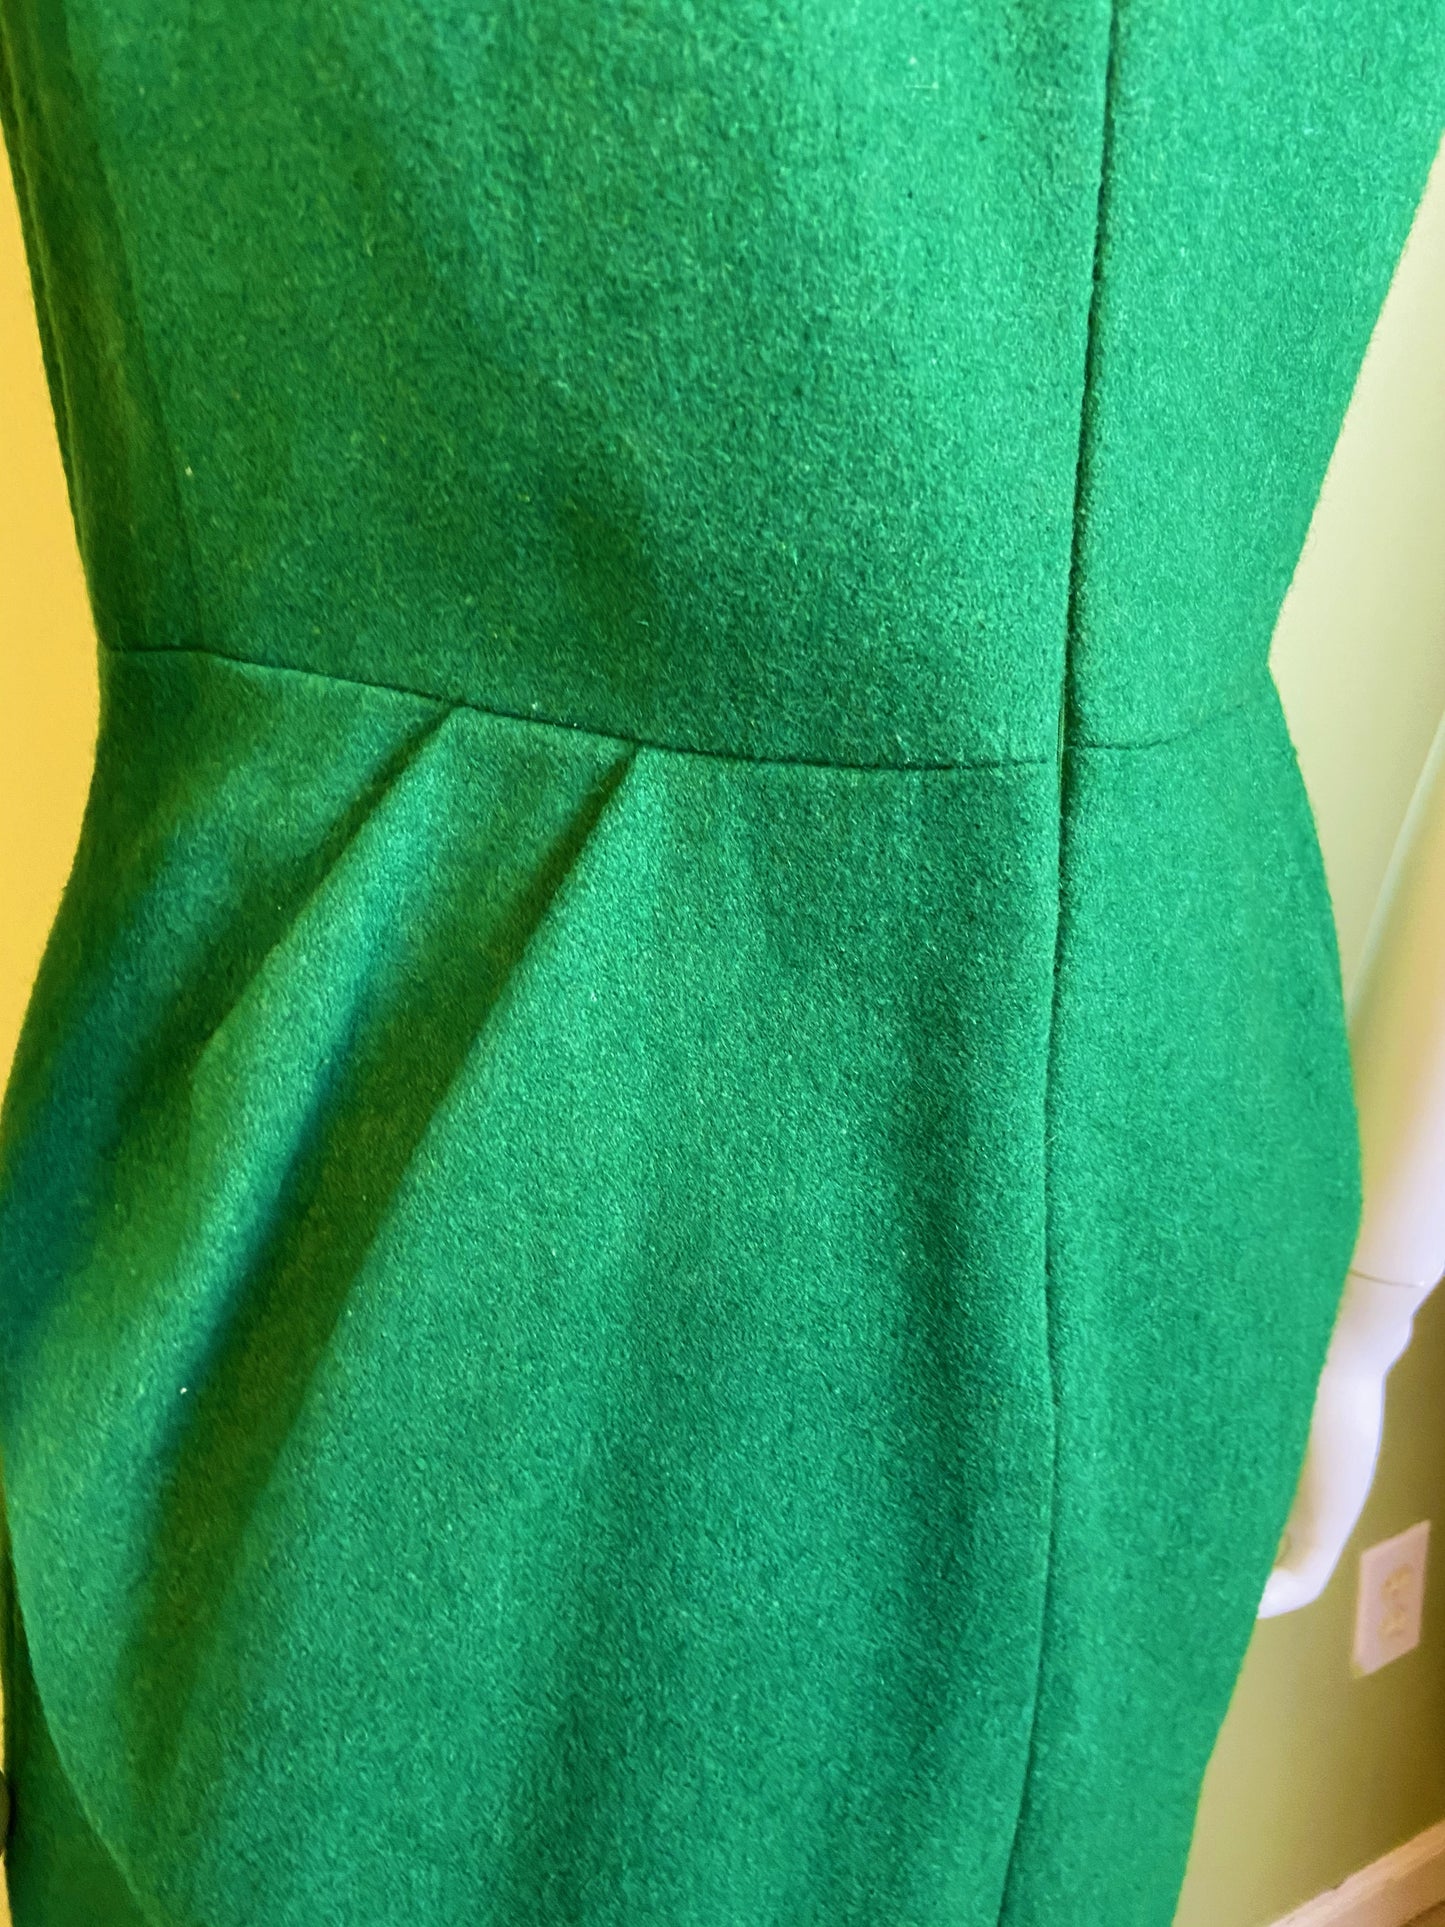 Voll Green Wool Fitted Sheath Mini Dress